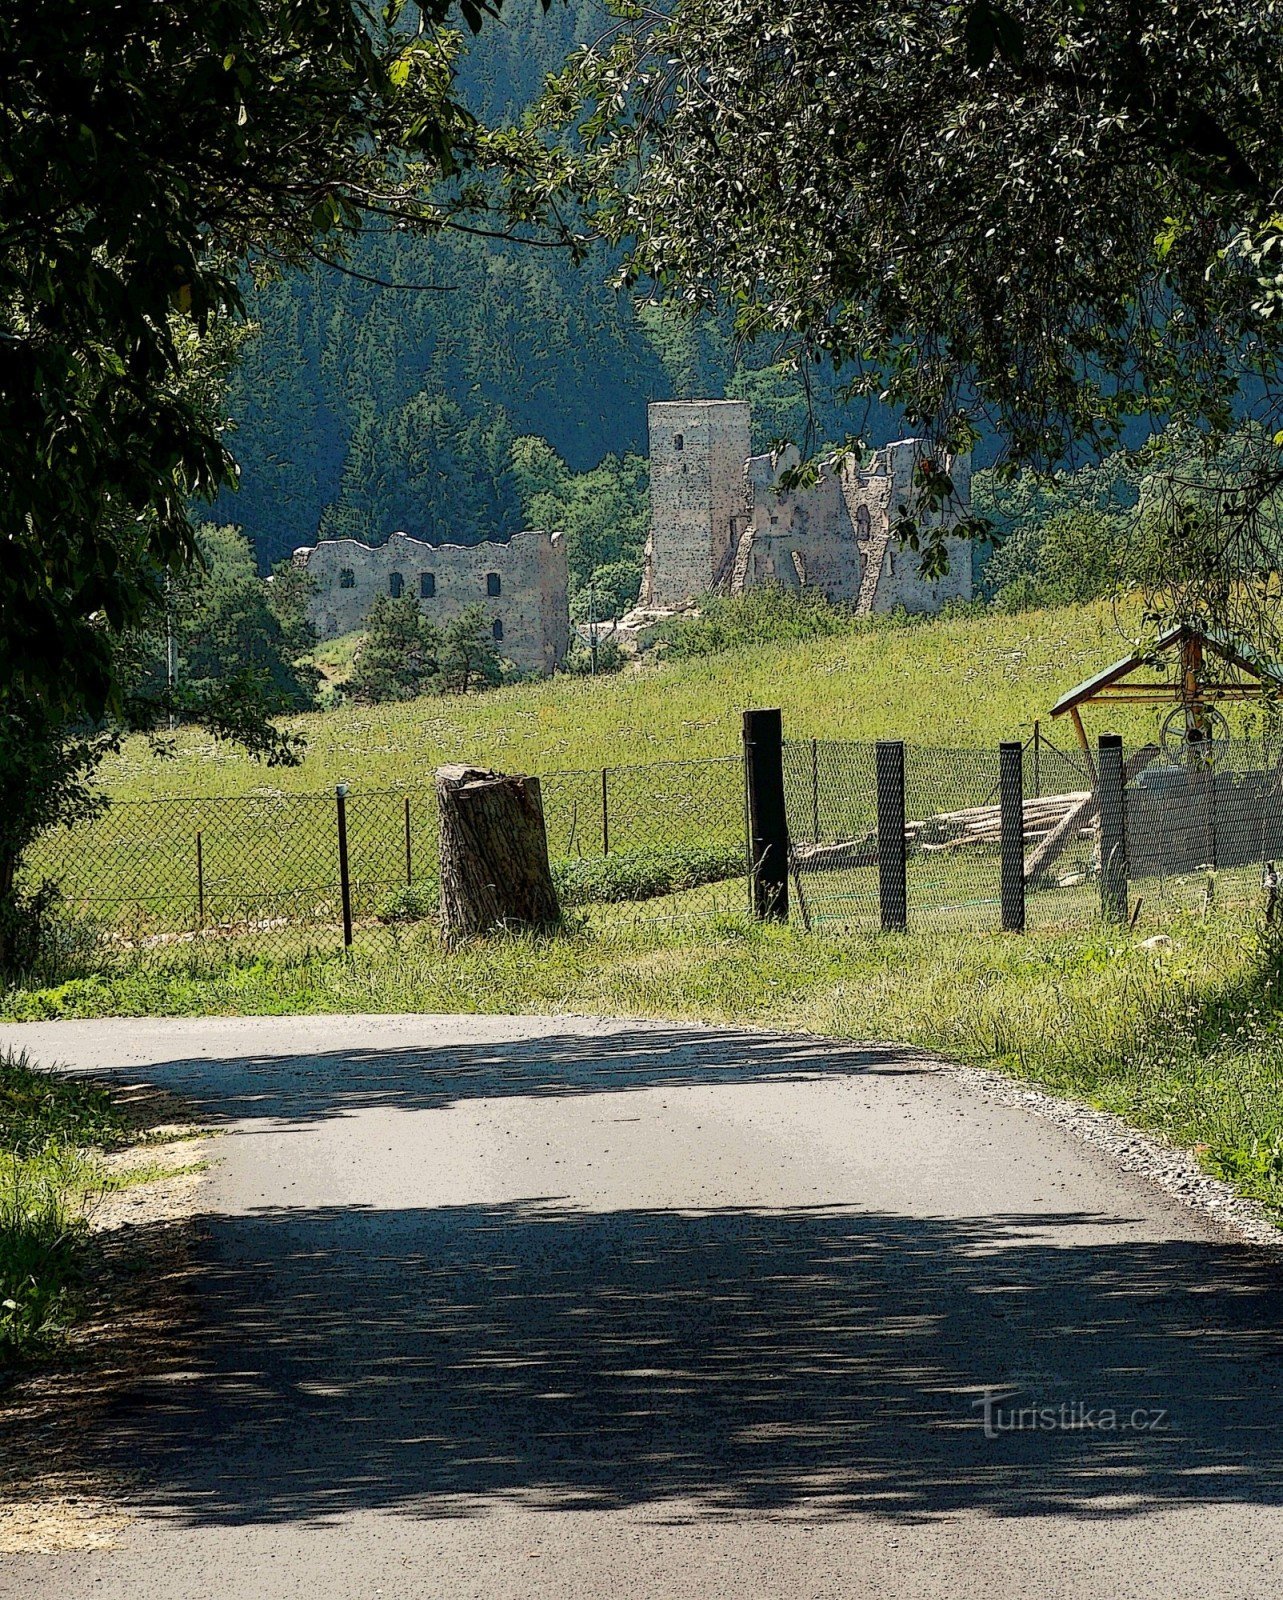 游览 Vysočina 的 Rokštejna 城堡遗址